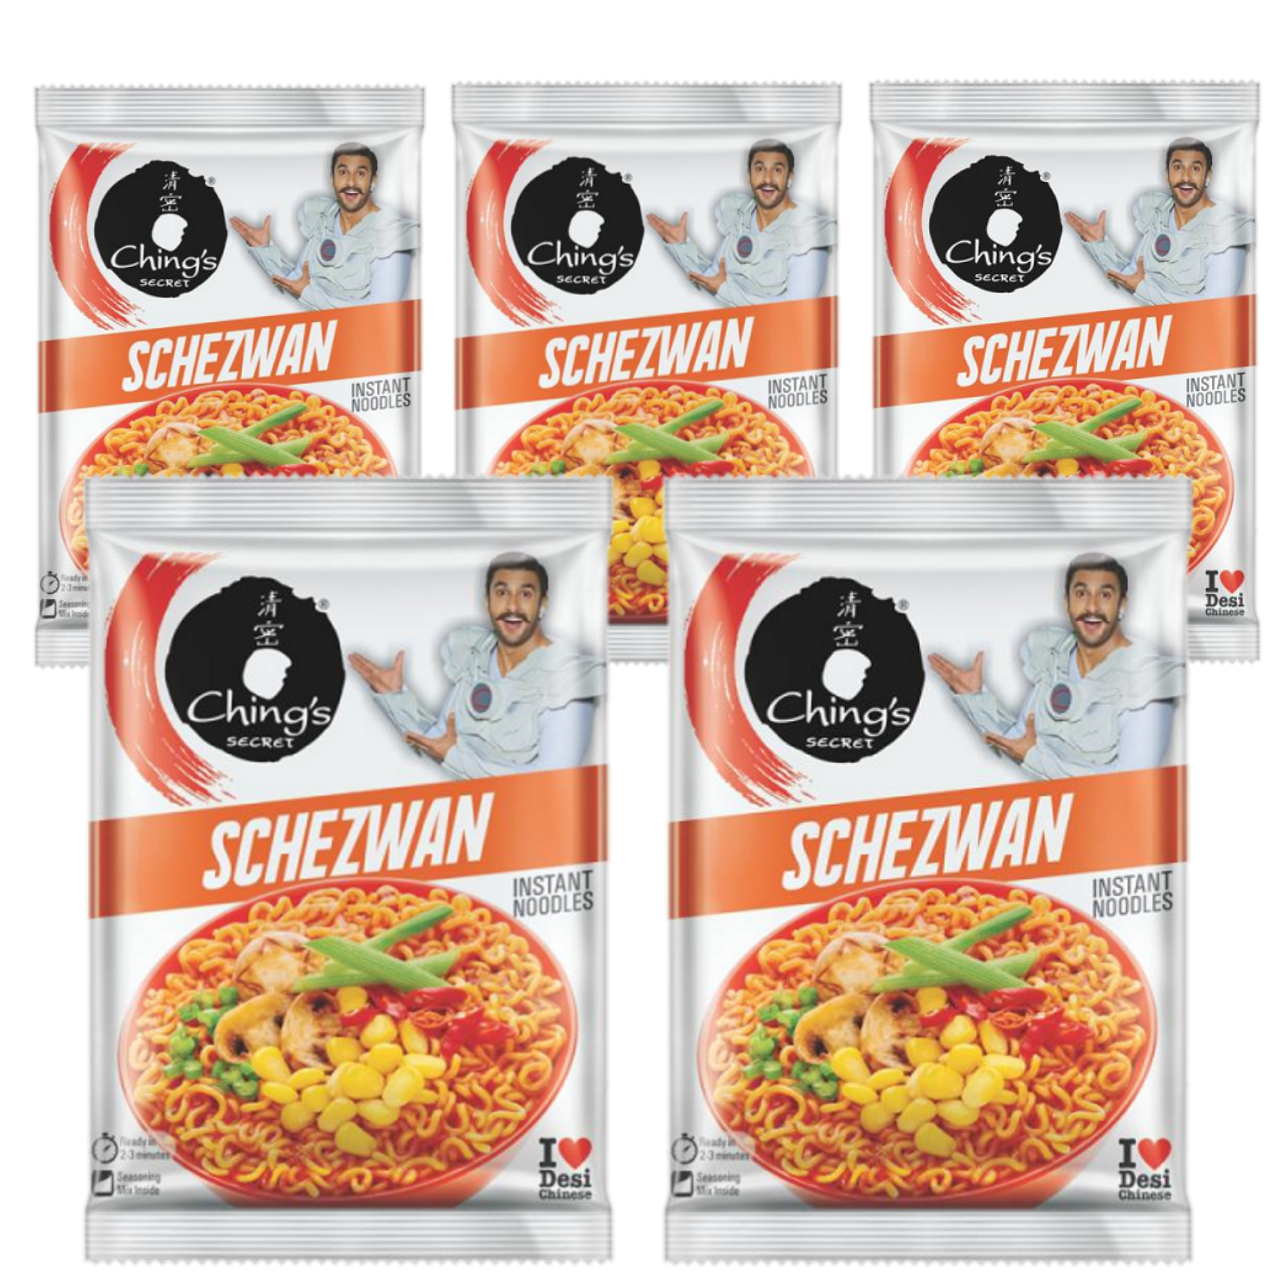 Chings Secret Schezwan Instant Noodles (Bundle of 5 x 60g)